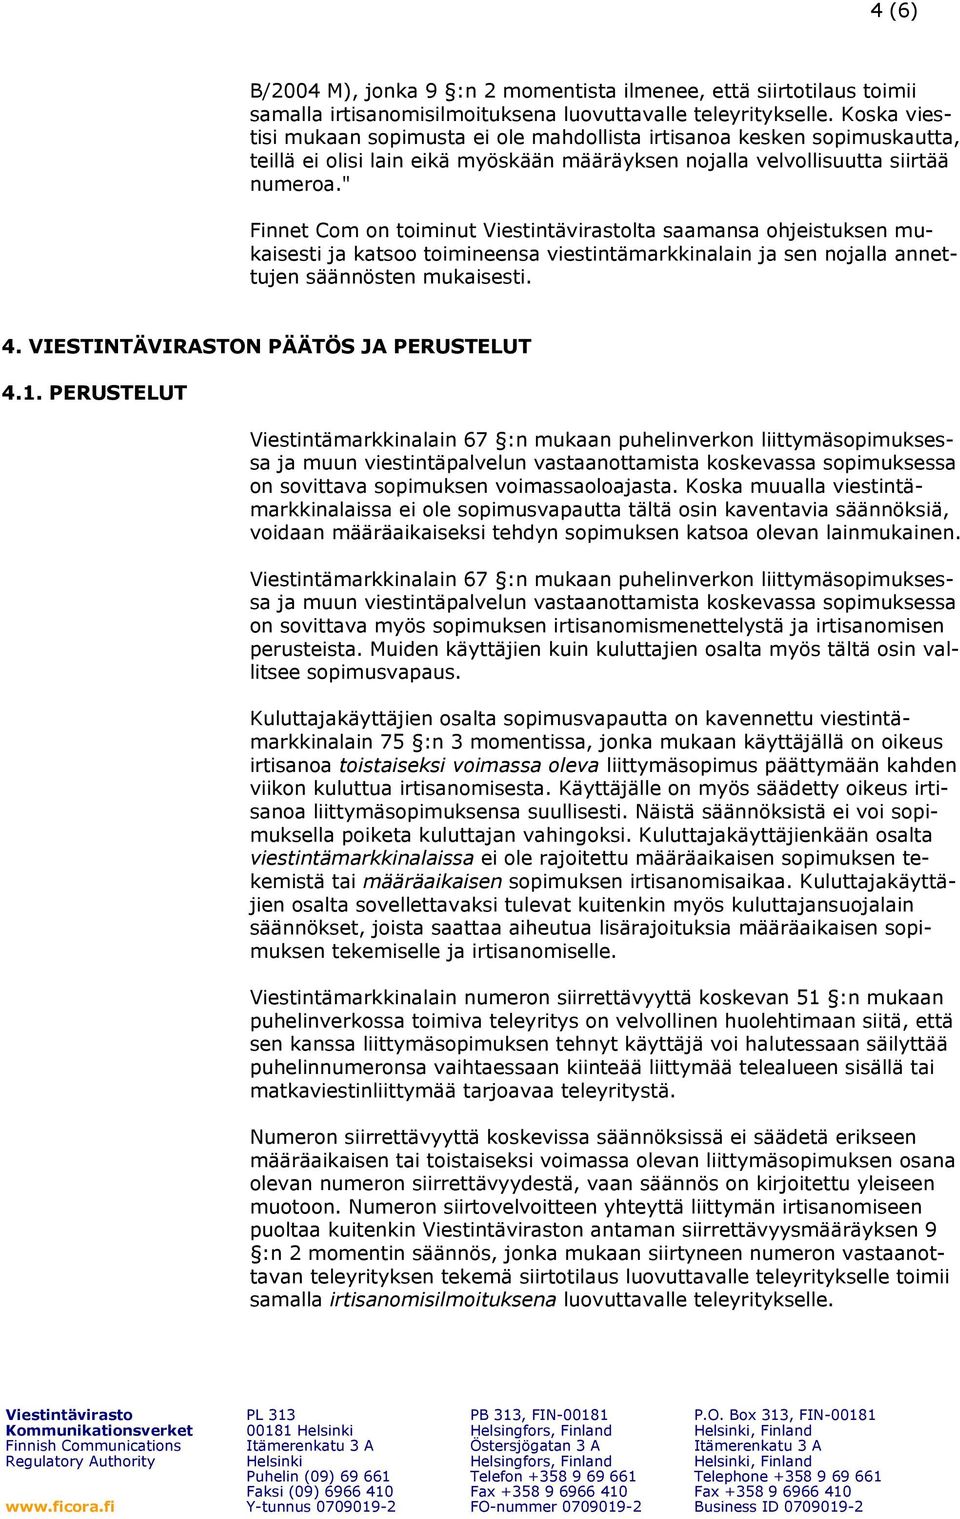 " Finnet Com on toiminut lta saamansa ohjeistuksen mukaisesti ja katsoo toimineensa viestintämarkkinalain ja sen nojalla annettujen säännösten mukaisesti. 4. VIESTINTÄVIRASTON PÄÄTÖS JA PERUSTELUT 4.